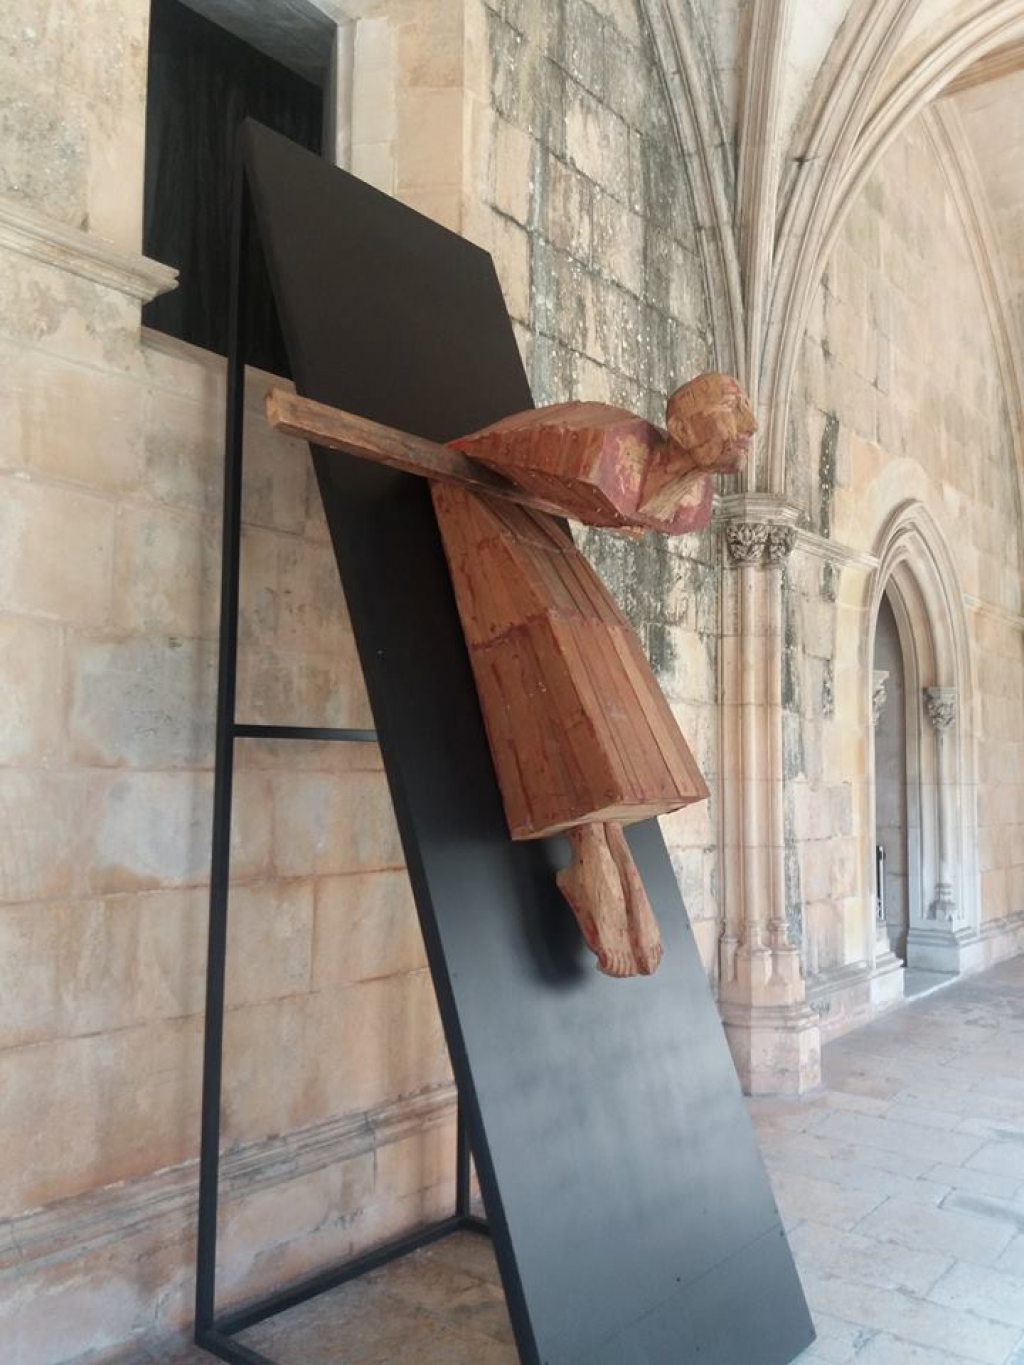 Expozitia  Sacrificiu a sculptorului Mircea Roman prelungita pana la data de 3 februarie 2019 la Manastirea Batalha